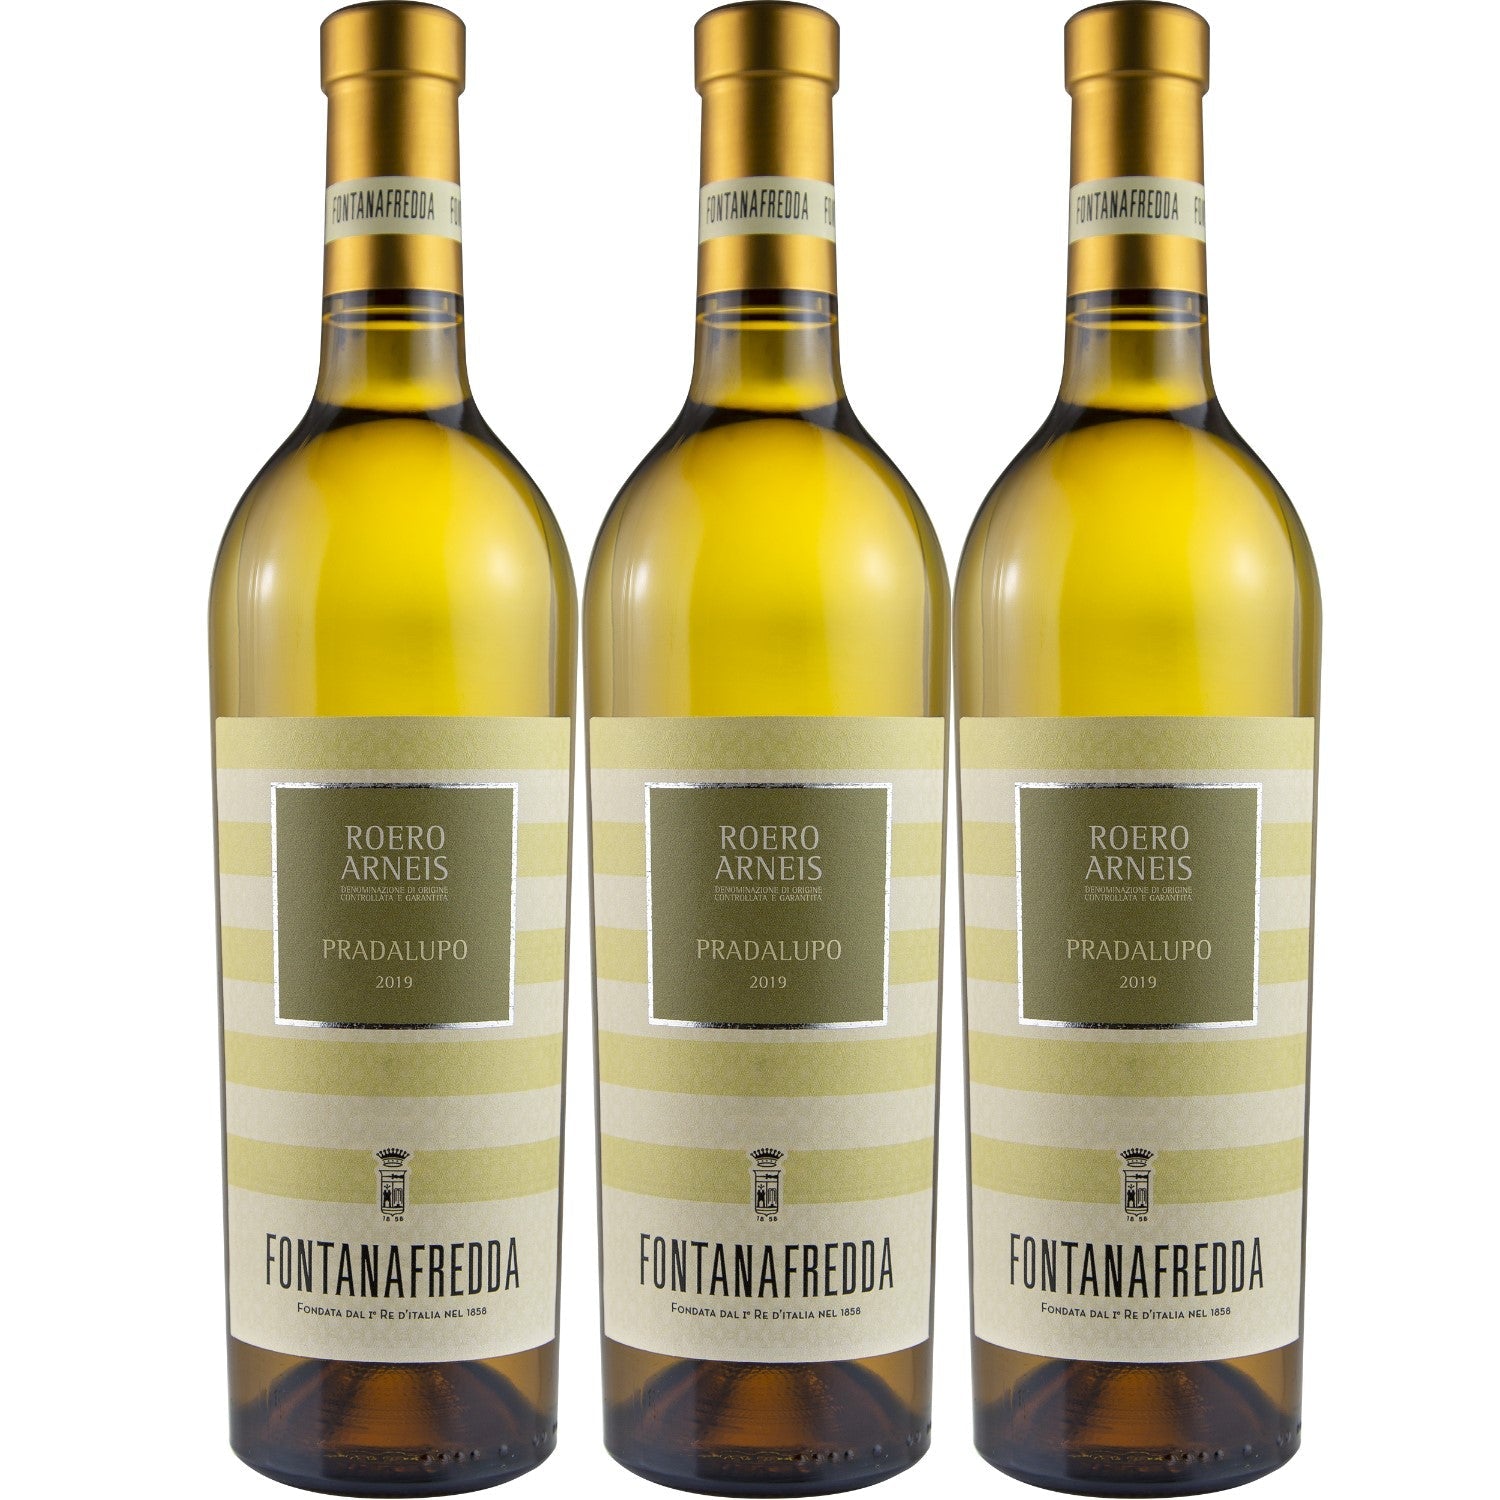 Fontanafredda Pradalupo Roero Arneis DOCG Weißwein Wein trocken Italien (3 x 0.75l) - Versanel -